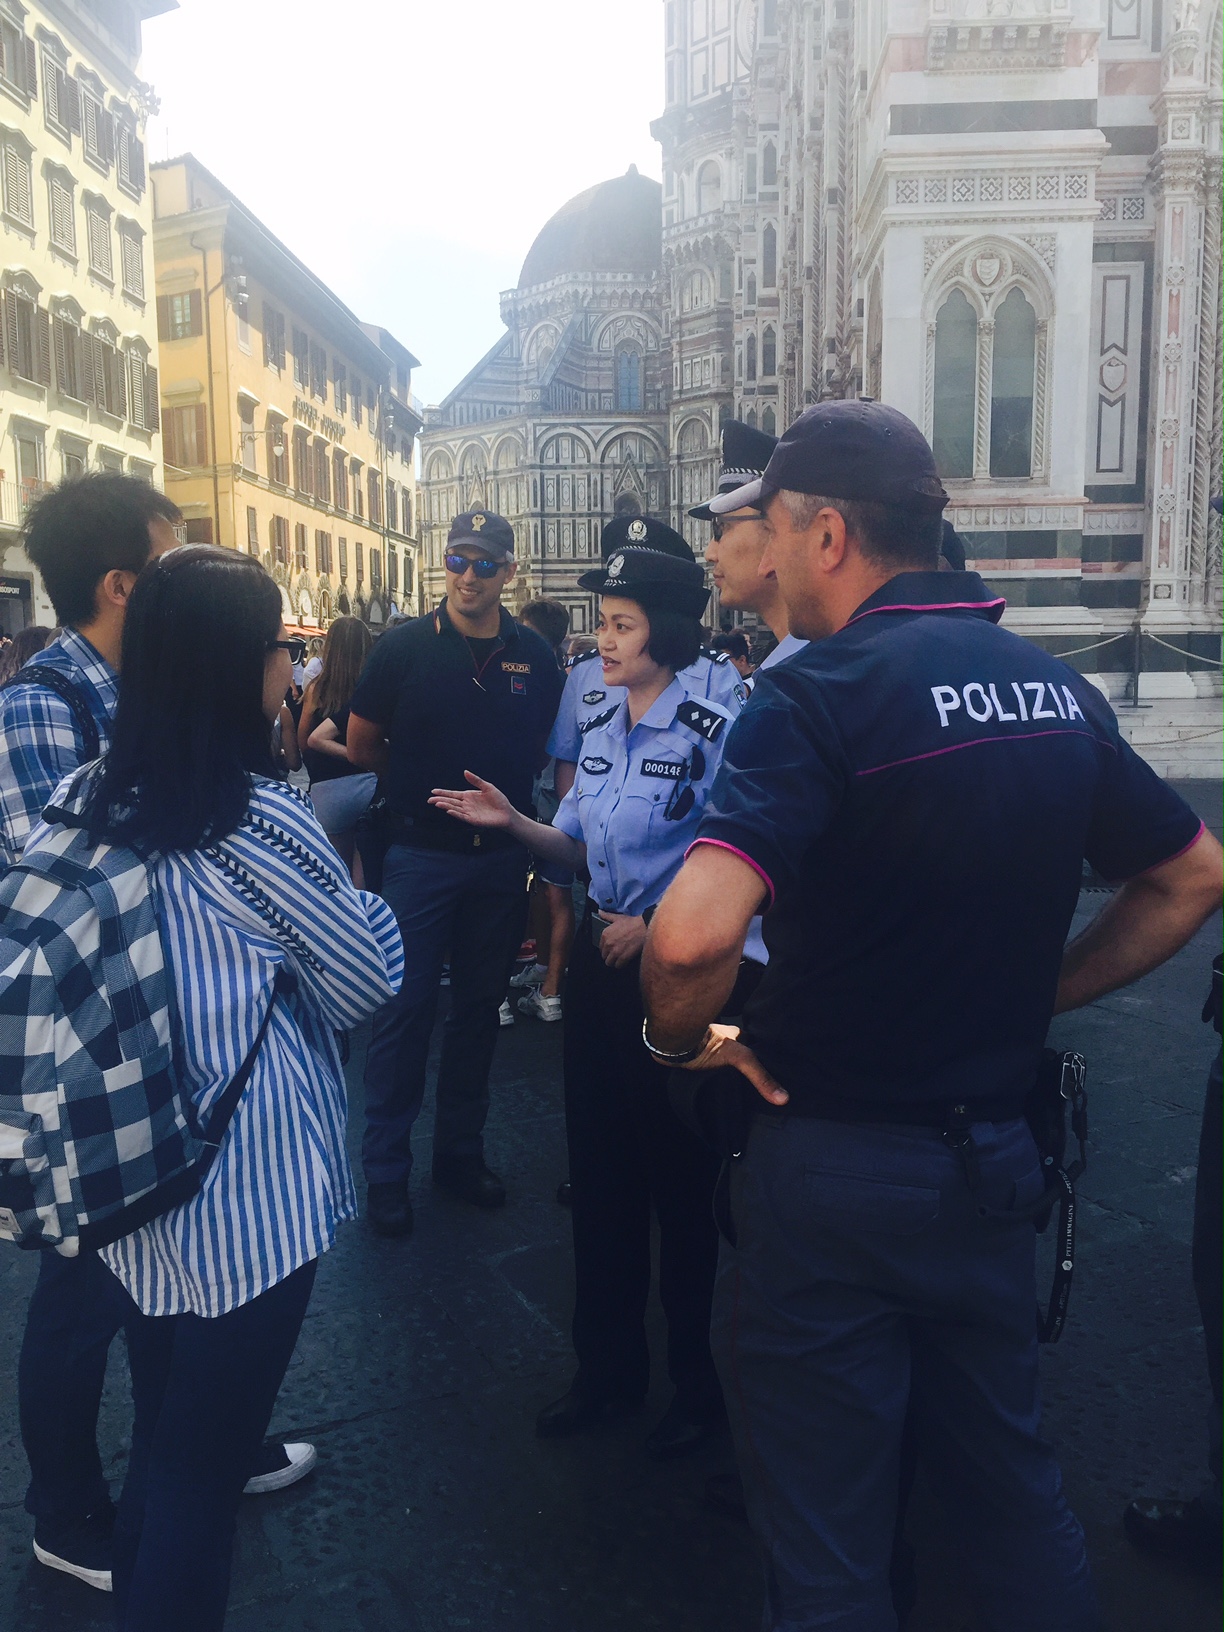 Polizia di Stato - Questure sul web - Firenze